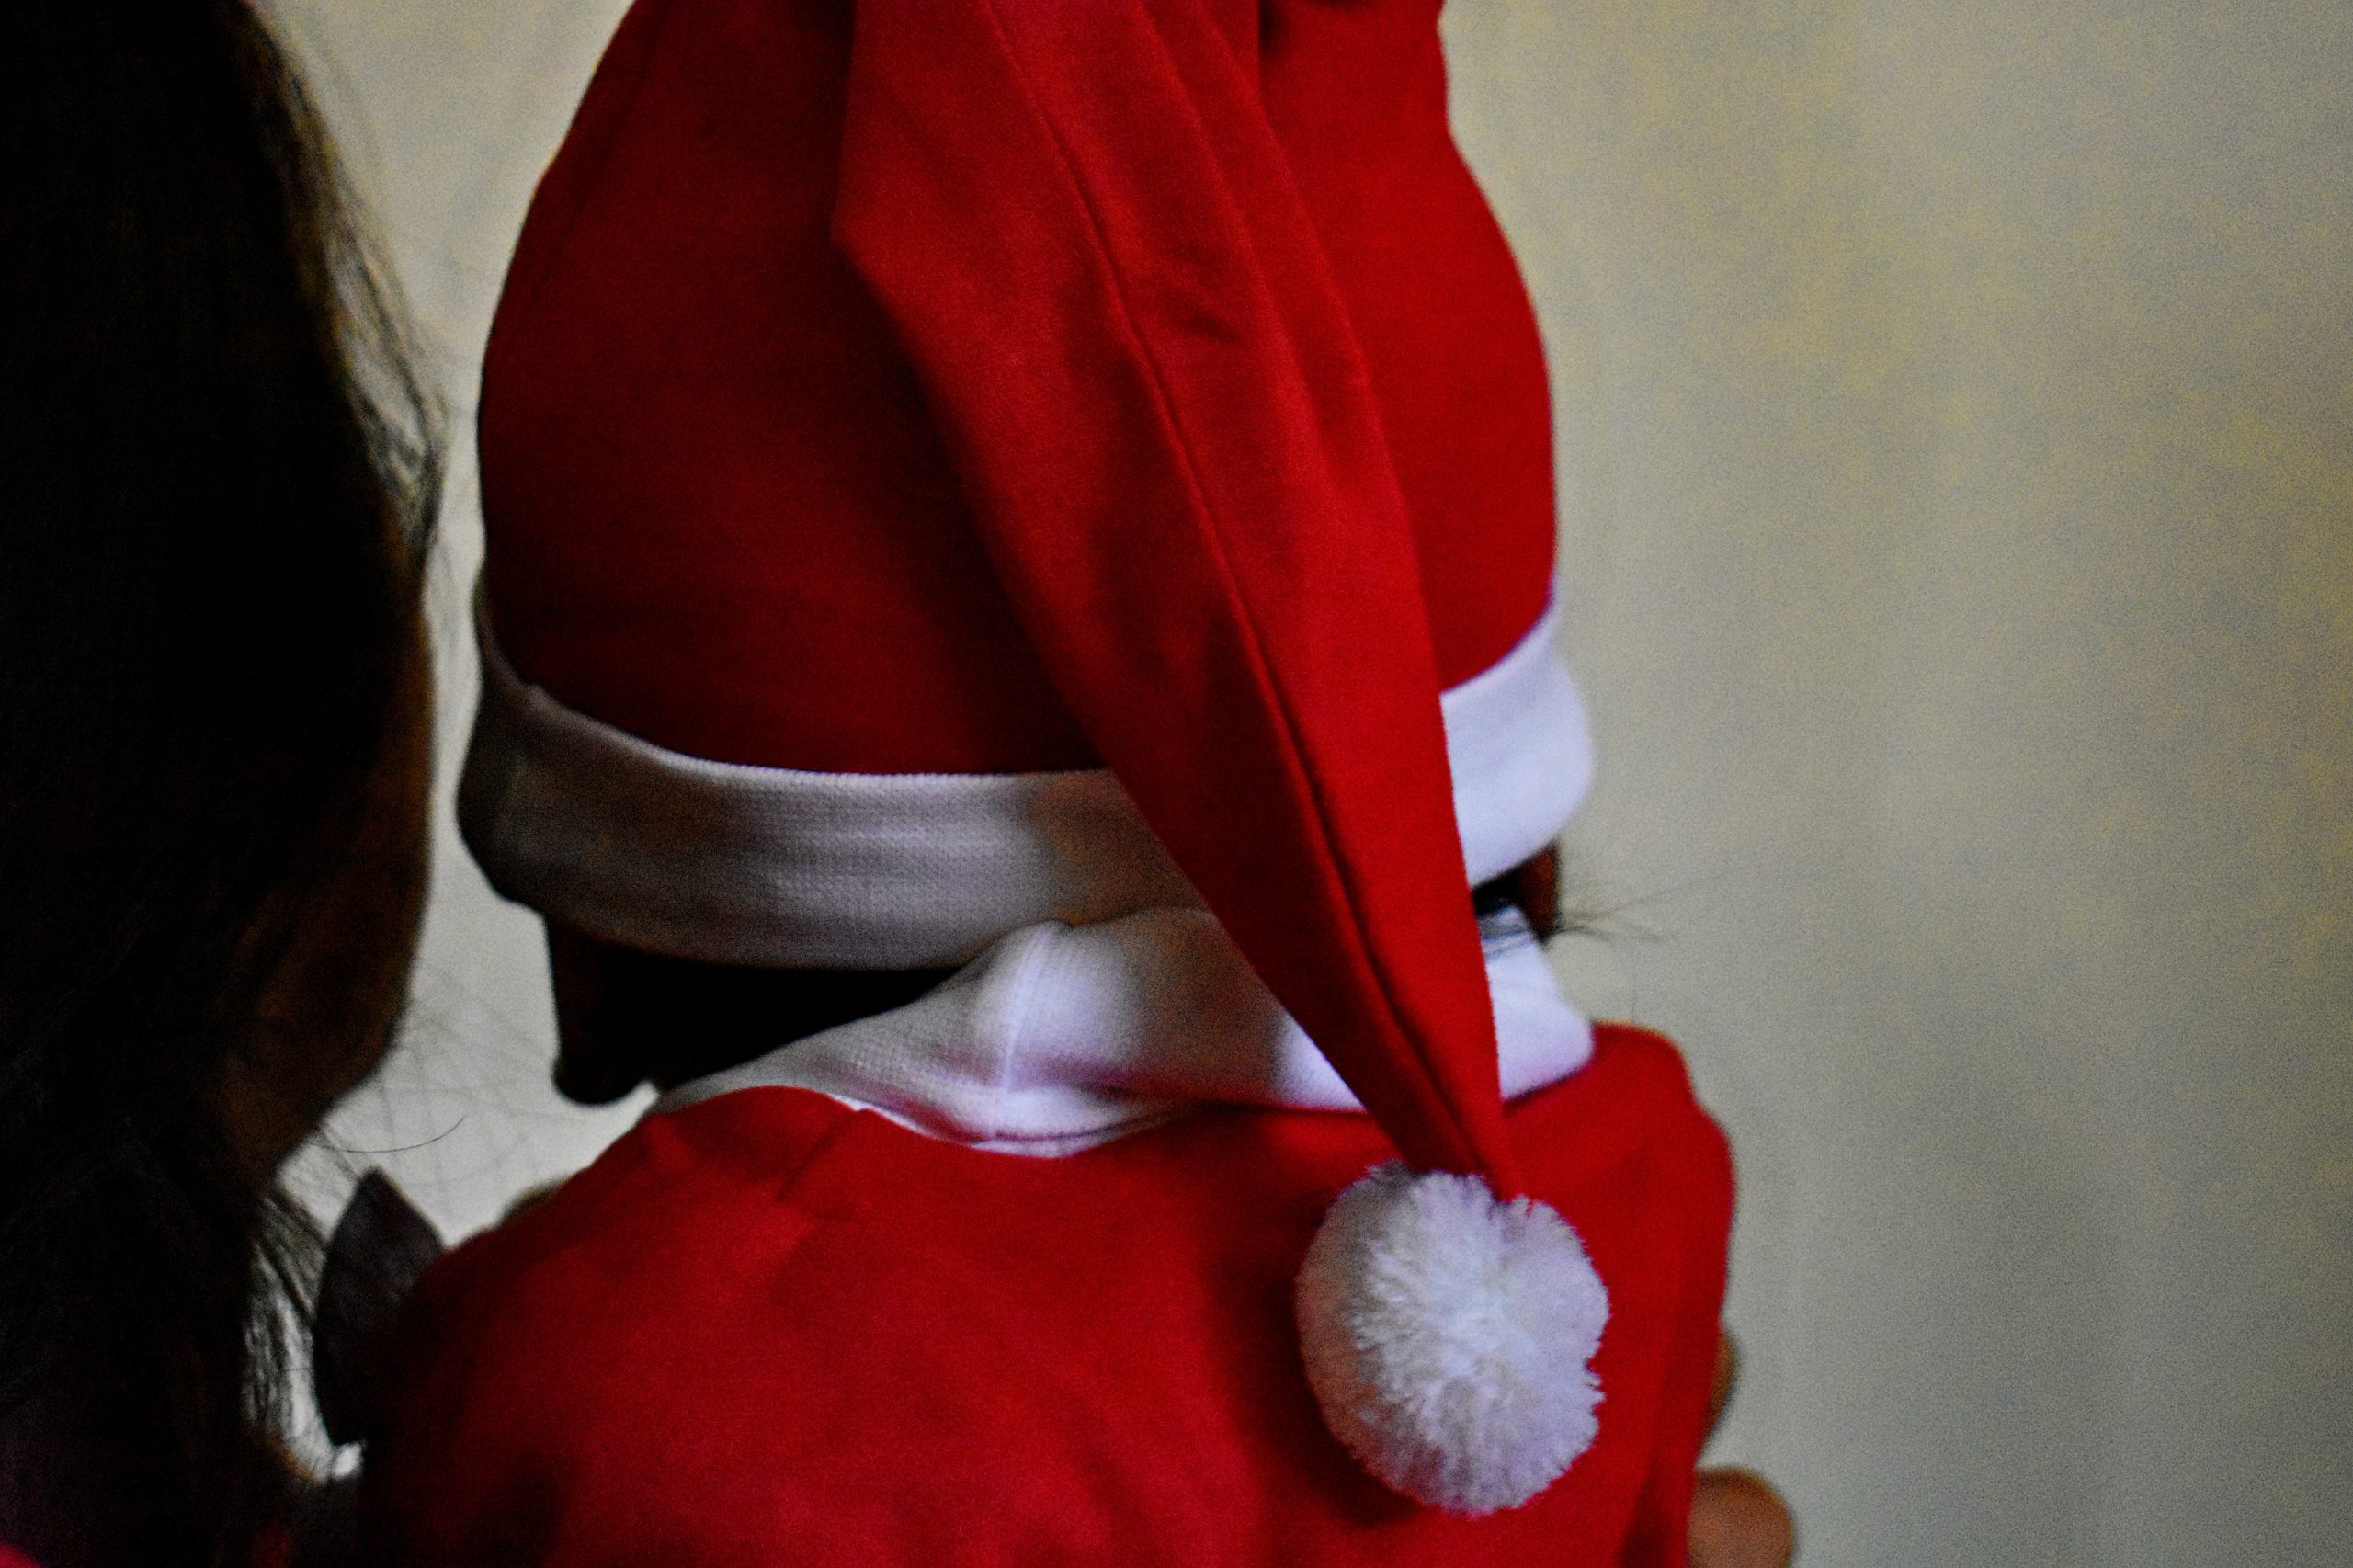 A kid in Santa Claus getup